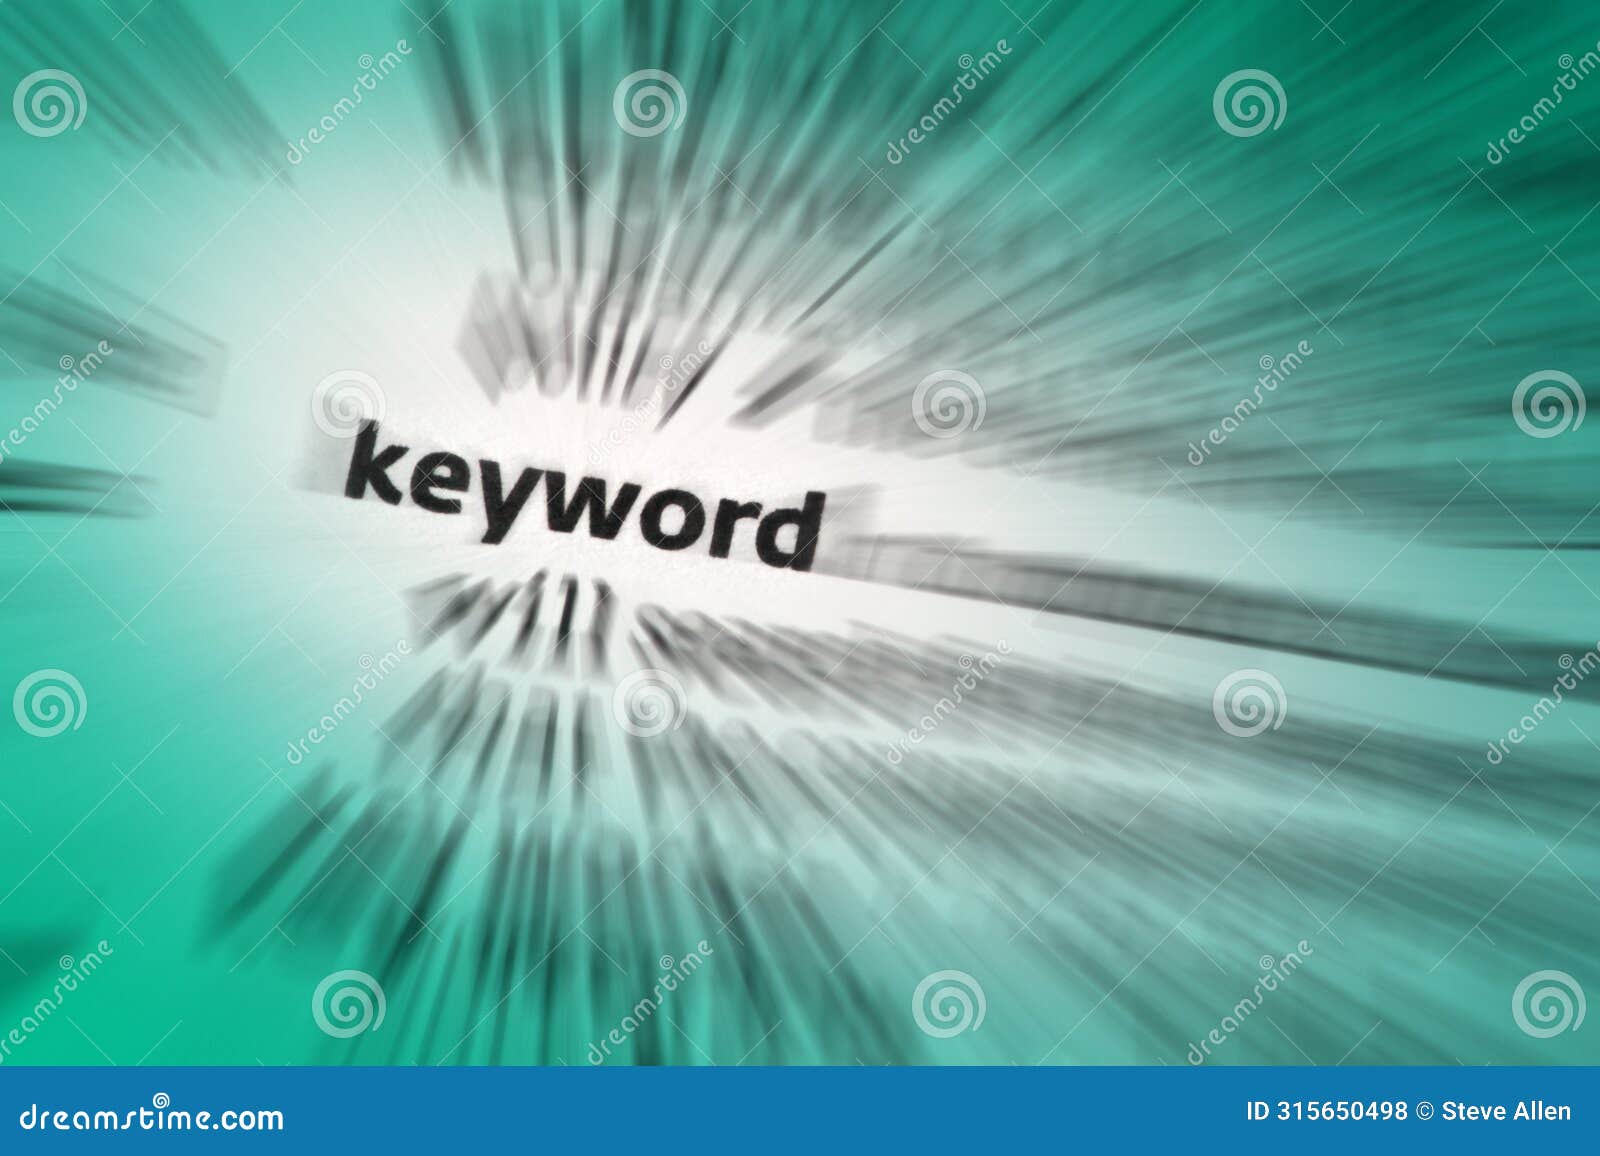 keyword - a word used as an index term to retrieve documents